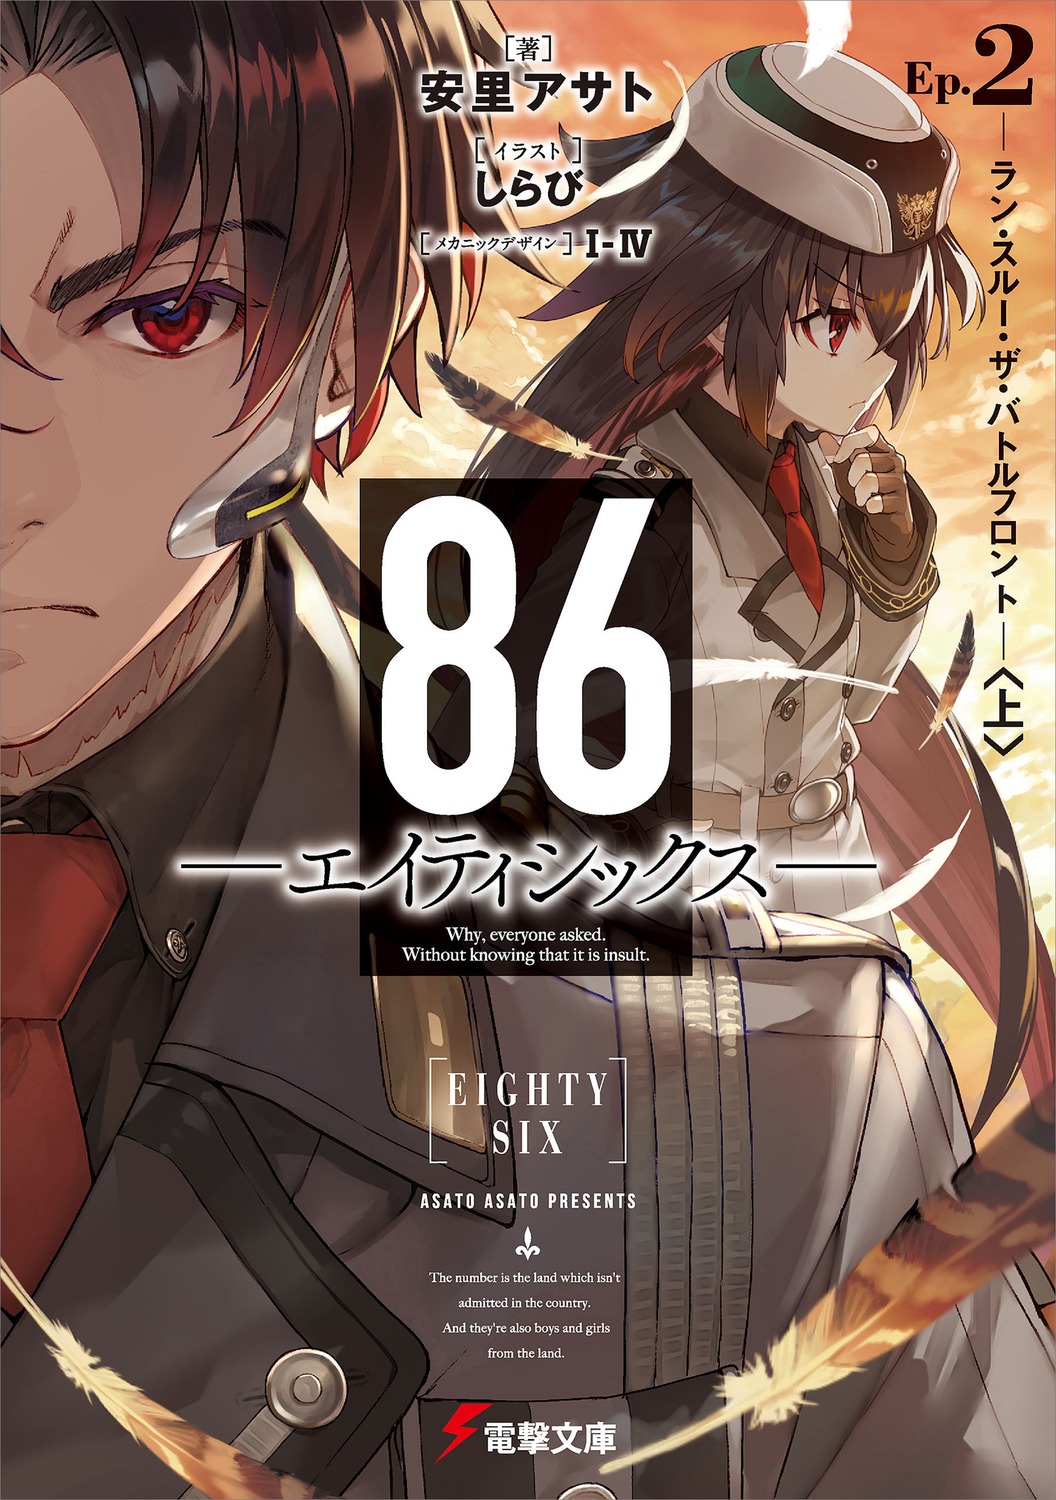 Animes In Japan 🎄 on X: Uma pequena correção, a primeira temporada do  anime 86: Eighty Six adaptou até o final do volume 3 da light novel,  vocês podem começar a ler